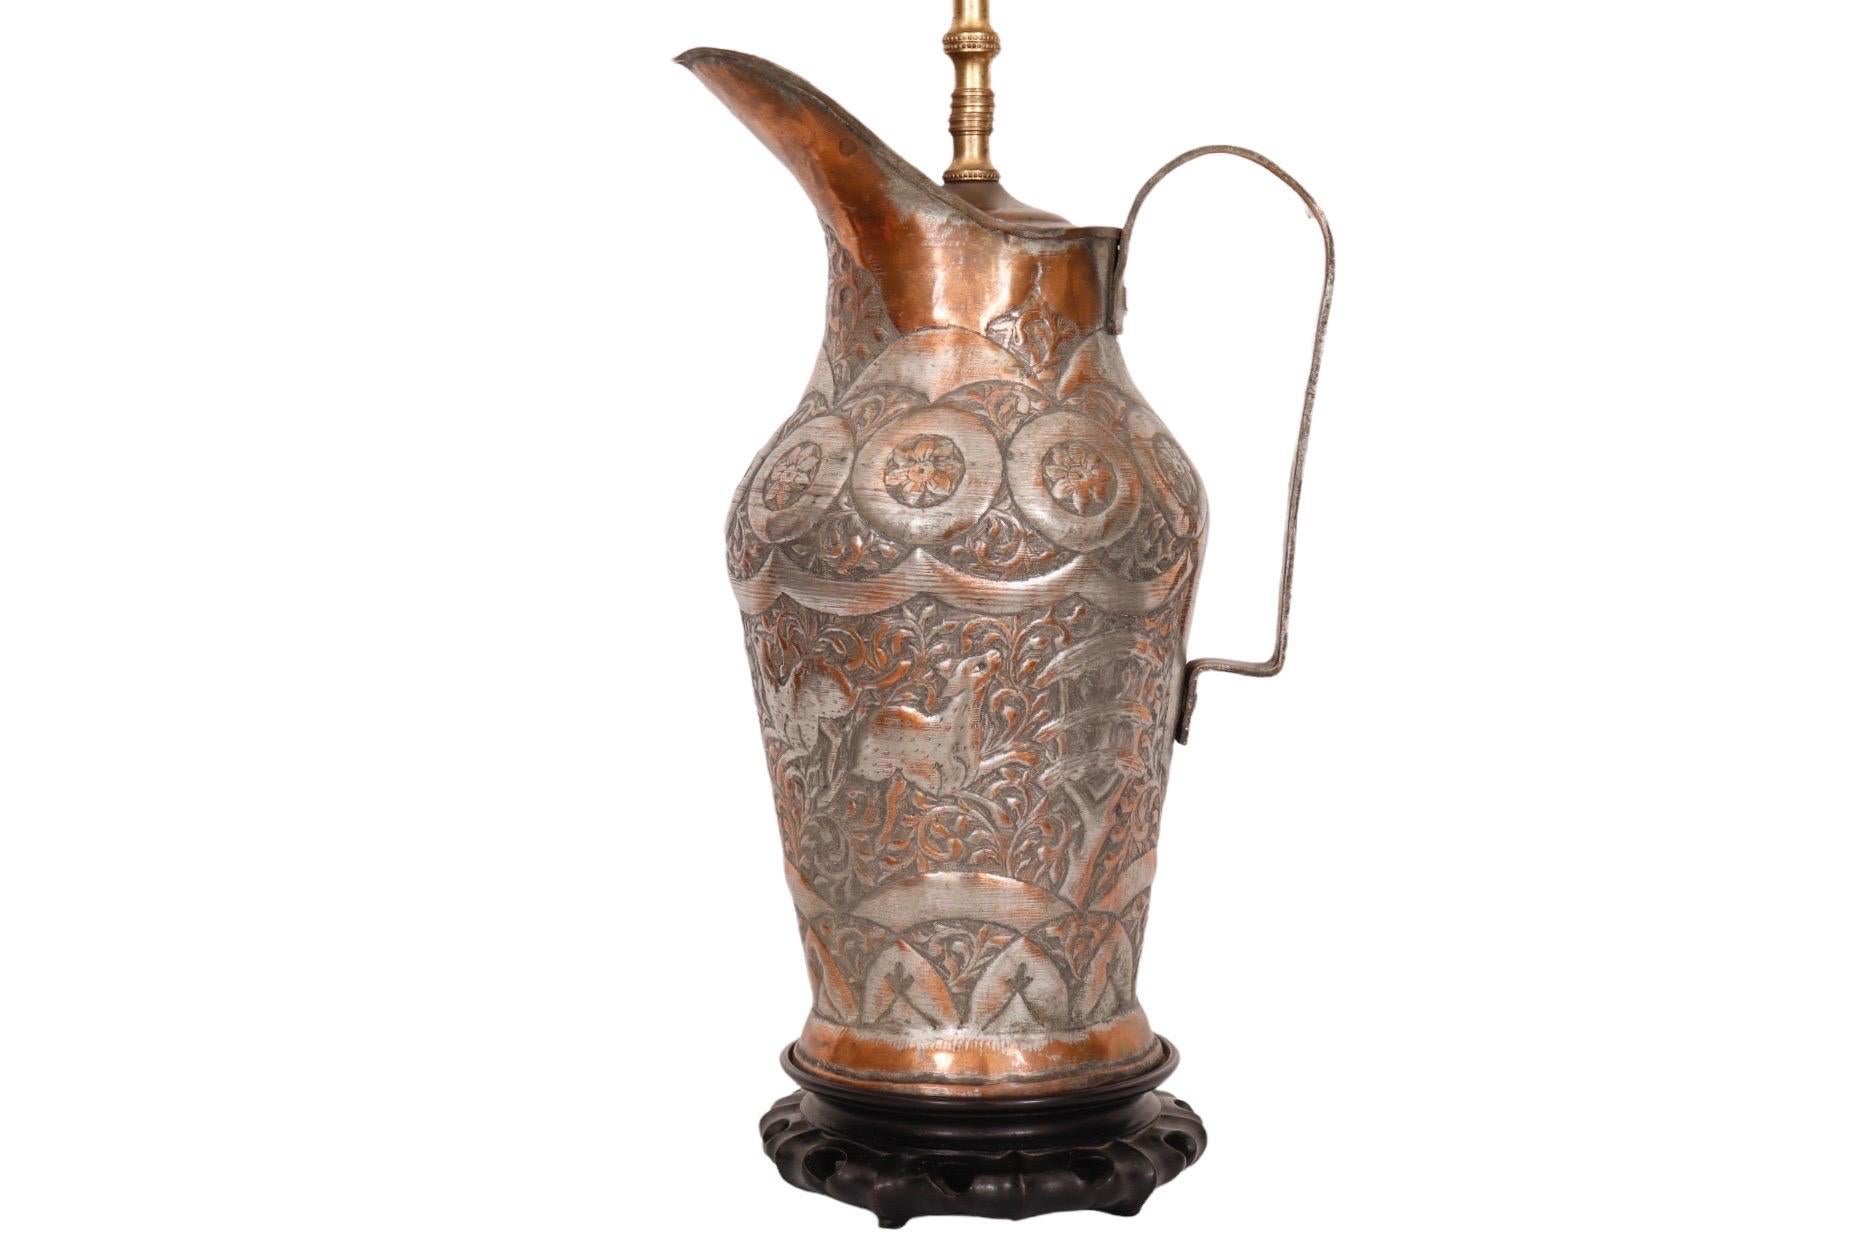 Un pichet à eau du Moyen-Orient du 19ème siècle en argent, cuivre et laiton, converti en lampe de table. Le pichet a une poignée rivetée et est gravé de cerfs au milieu de feuillages de vigne sur le corps principal, d'un motif floral autour du cou